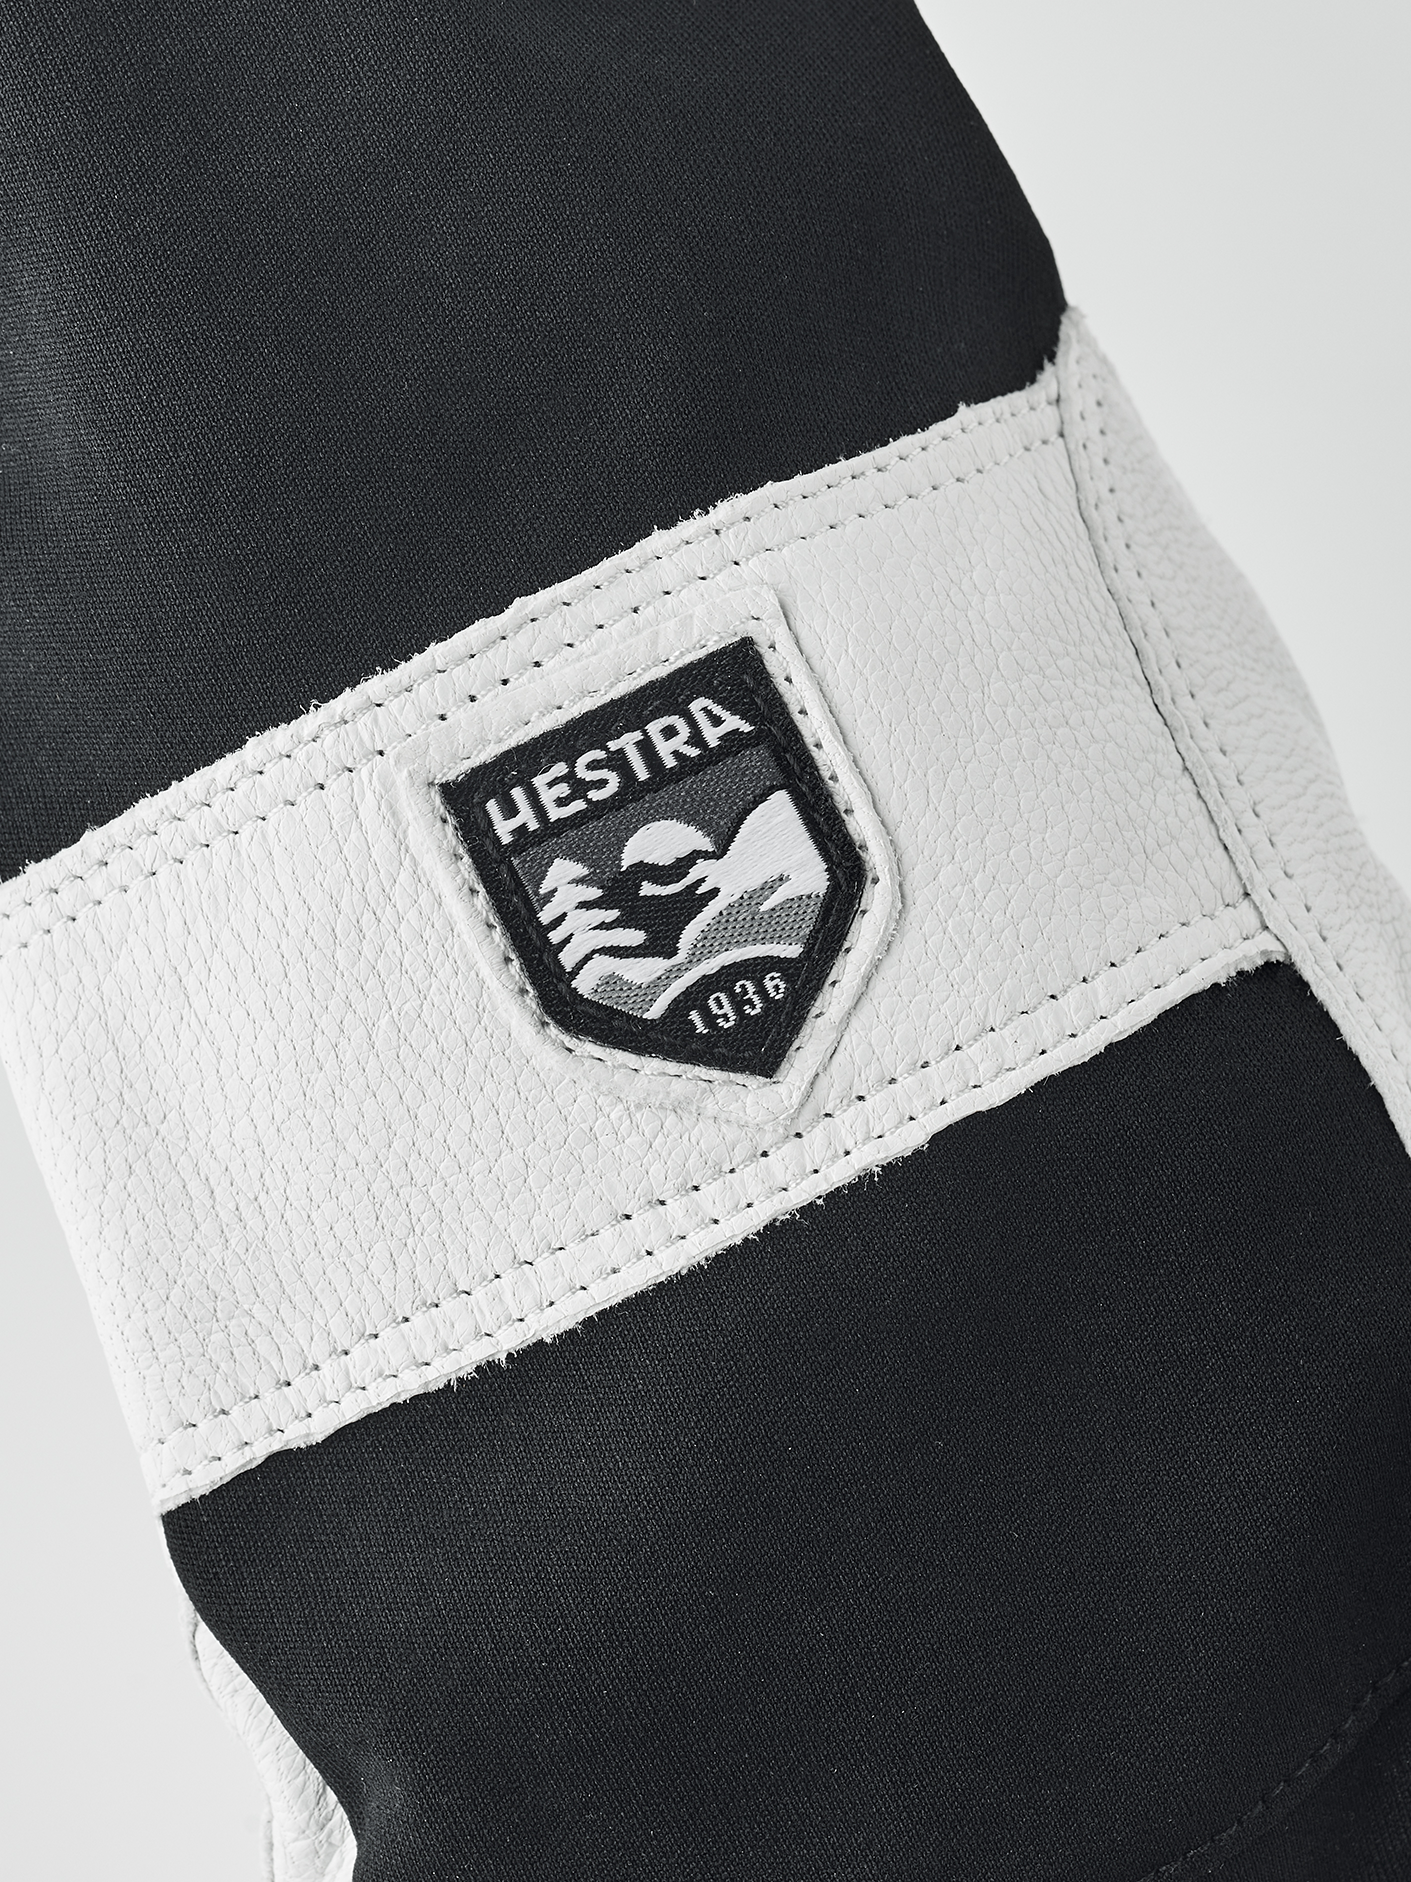 Leather Pull Over Mitt - Black | Hestra Gloves